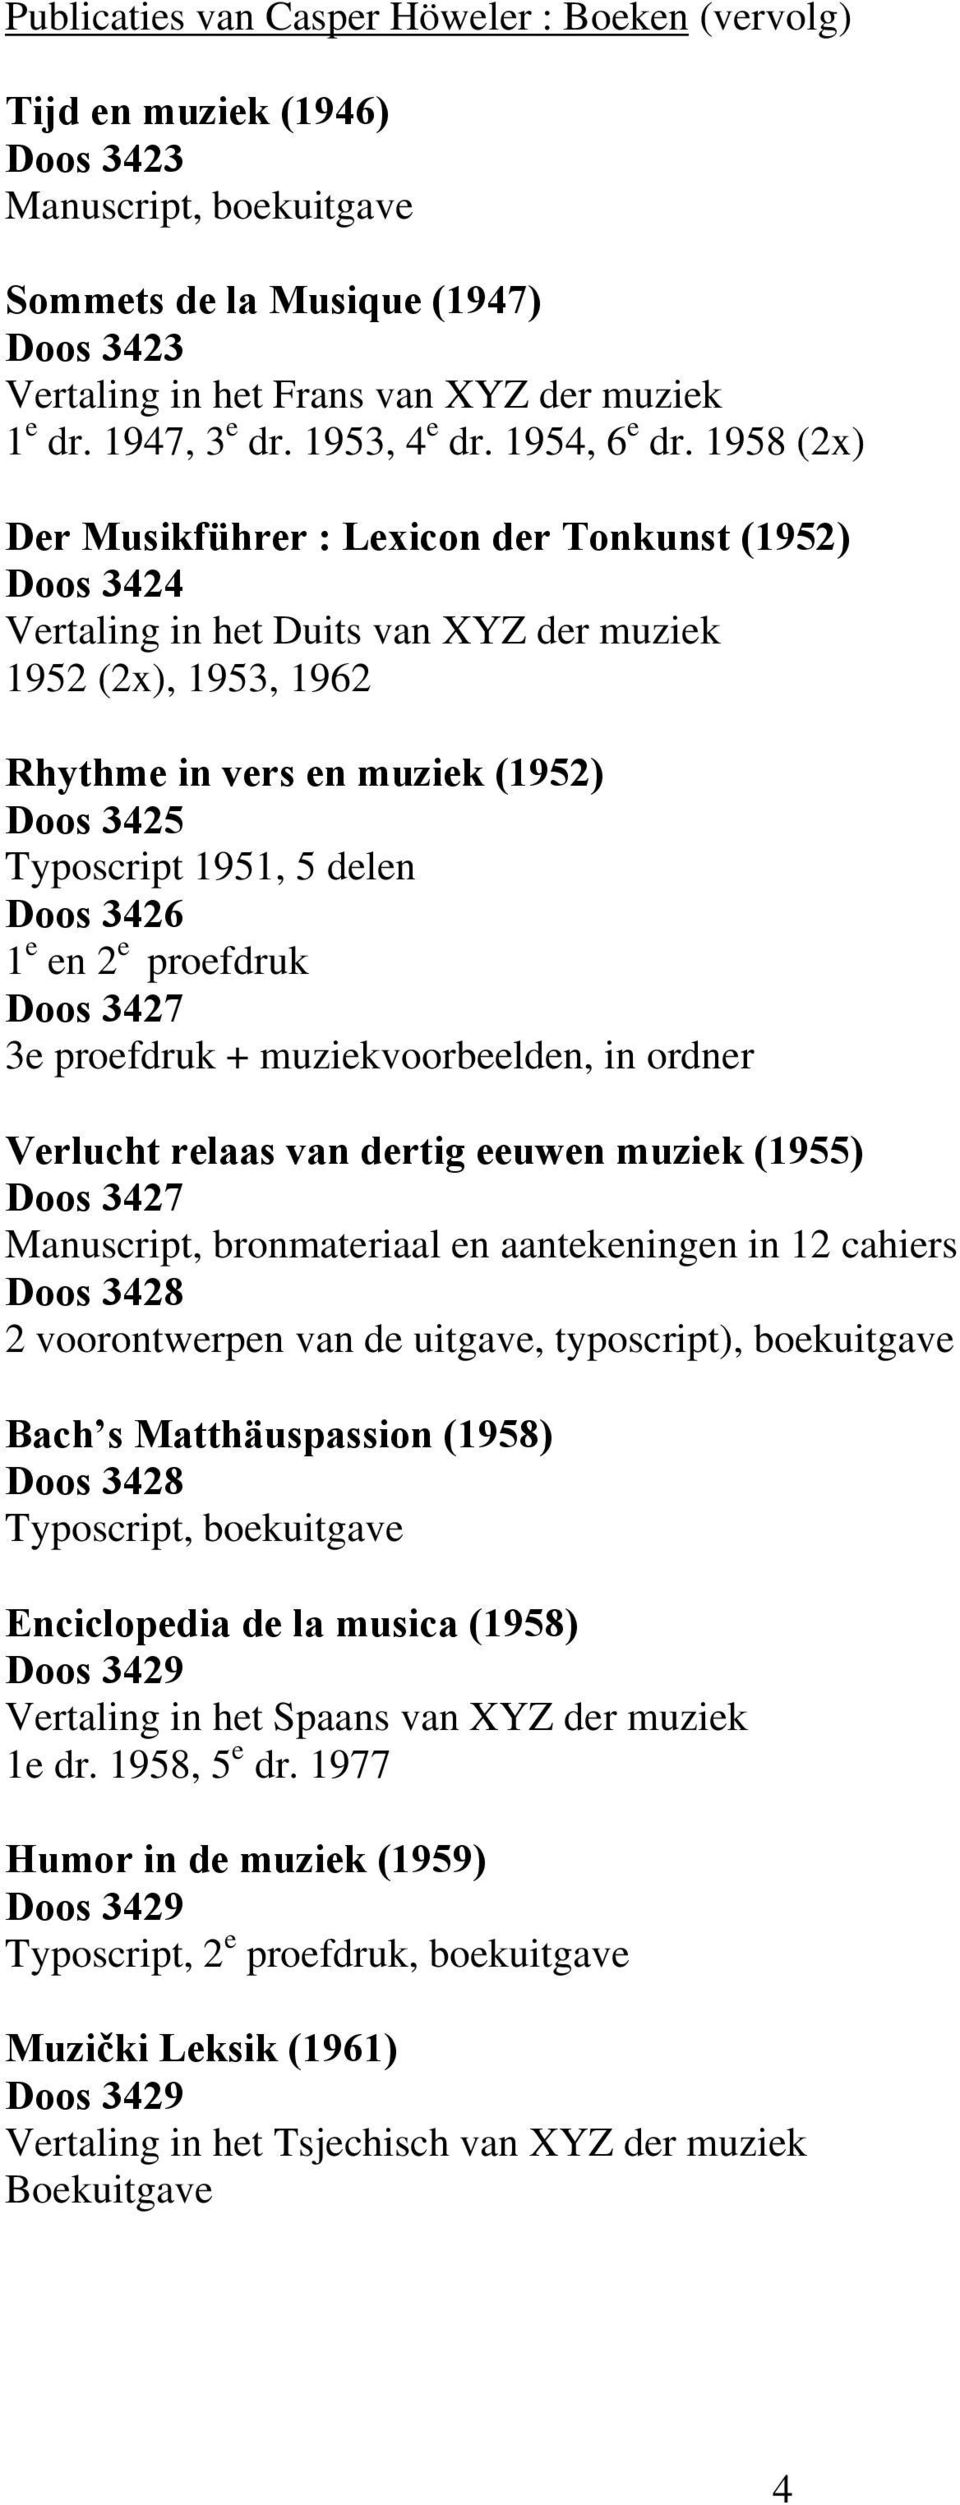 1958 (2x) Der Musikführer : Lexicon der Tonkunst (1952) Doos 3424 Vertaling in het Duits van XYZ der muziek 1952 (2x), 1953, 1962 Rhythme in vers en muziek (1952) Doos 3425 Typoscript 1951, 5 delen